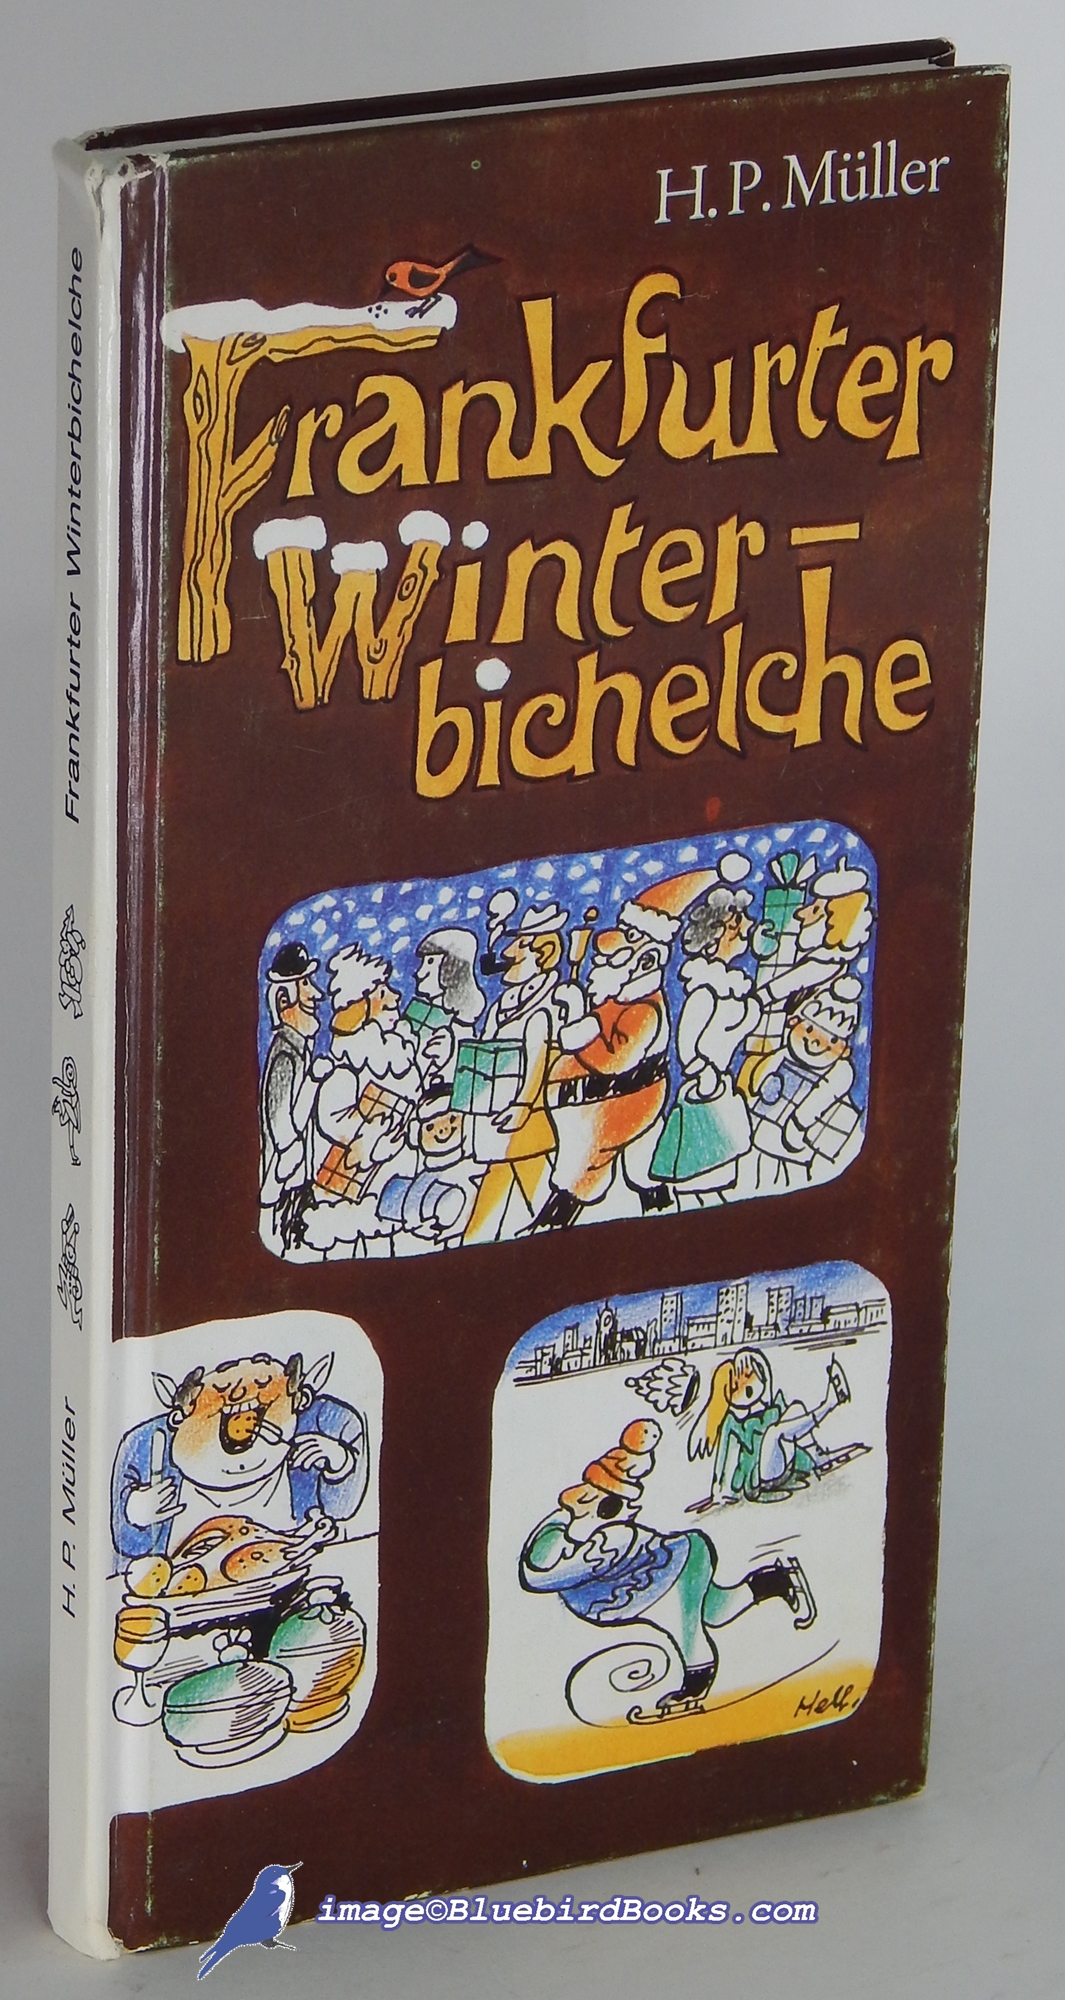 MLLER, H. P. - Frankfurter Winter-Bichelche